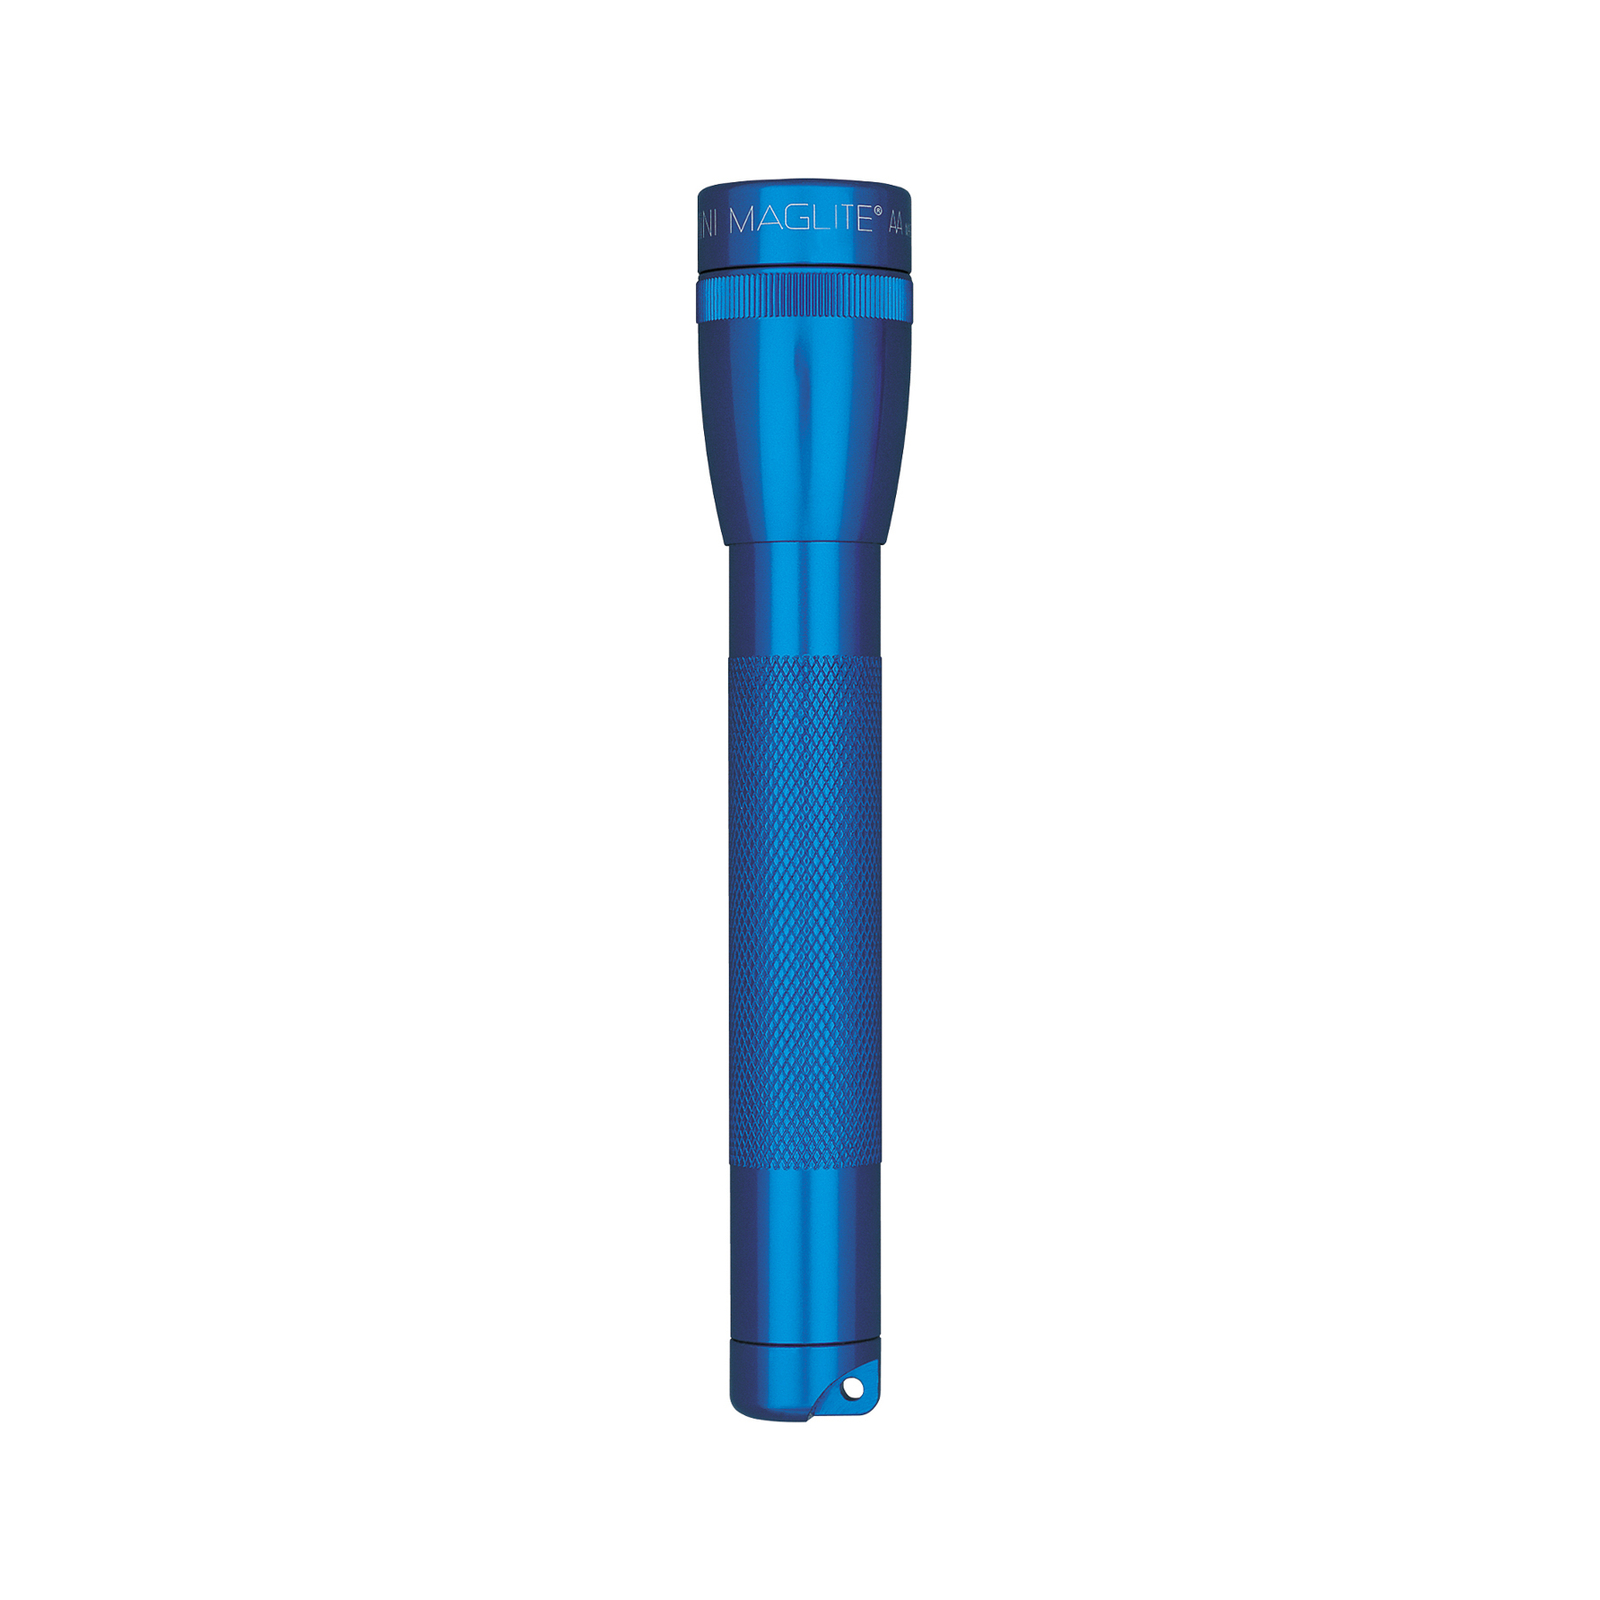 Maglite Xenon torch Mini, 2-Cell AA, blue